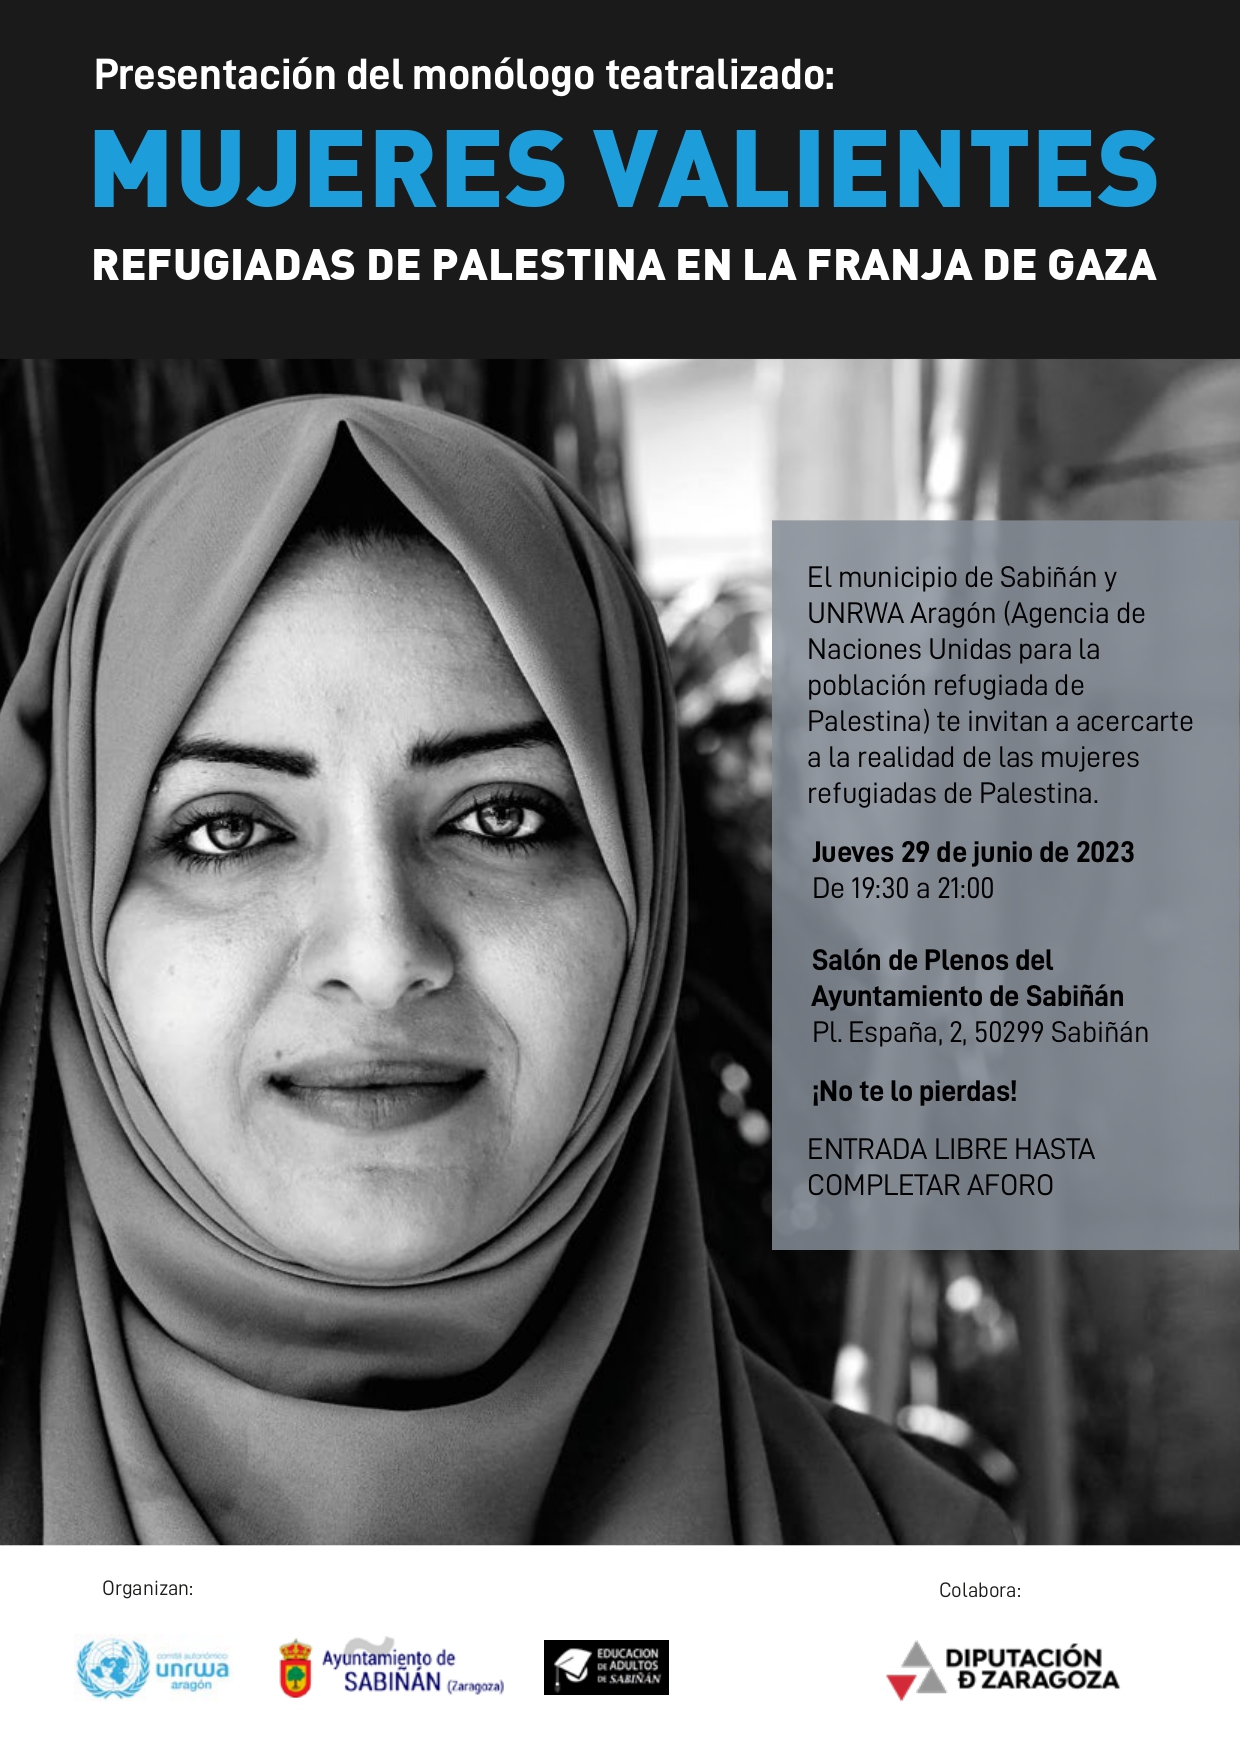 Monólogo teatralizado "Mujeres valientes Refugiadas de Palestina en la Franja de Gaza” en Sabiñán